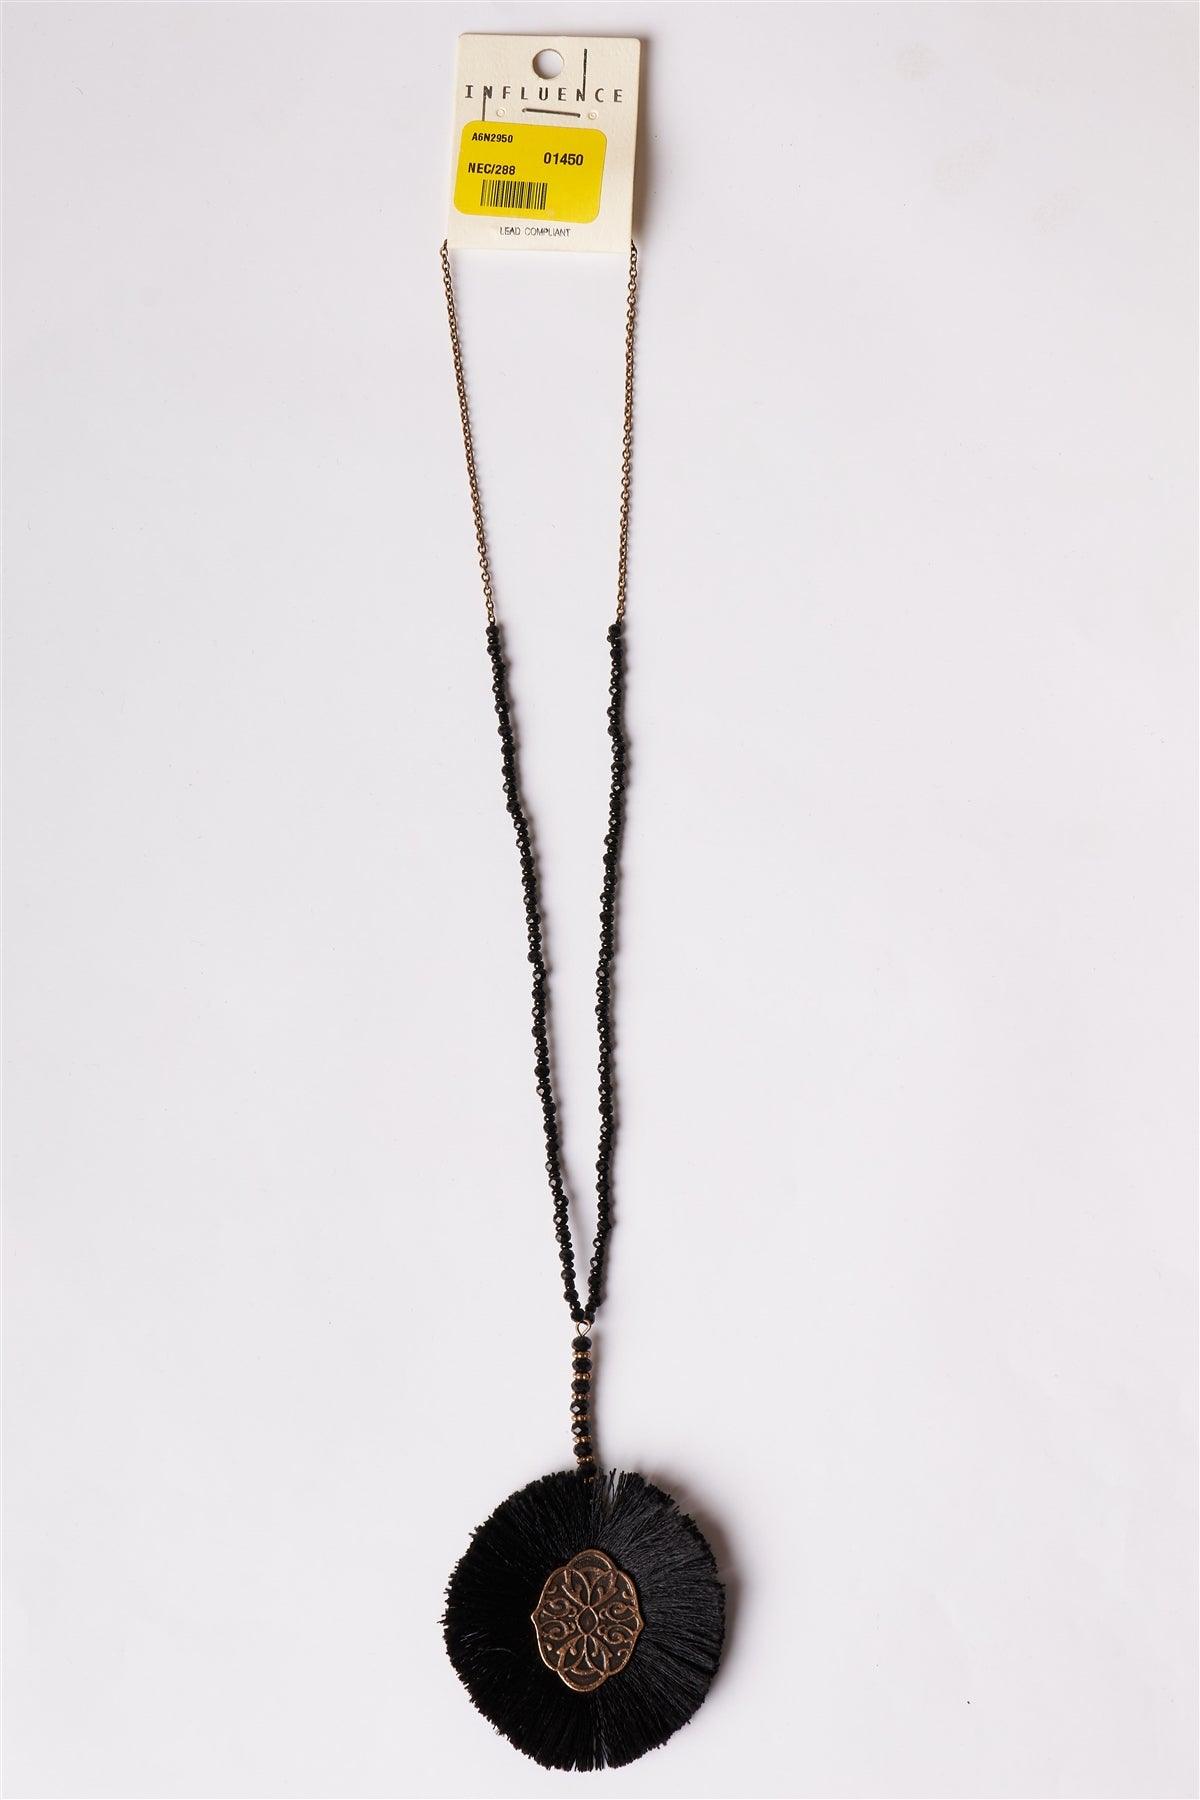 Jet Black Etched Tassel Pendant Necklace /1 Piece